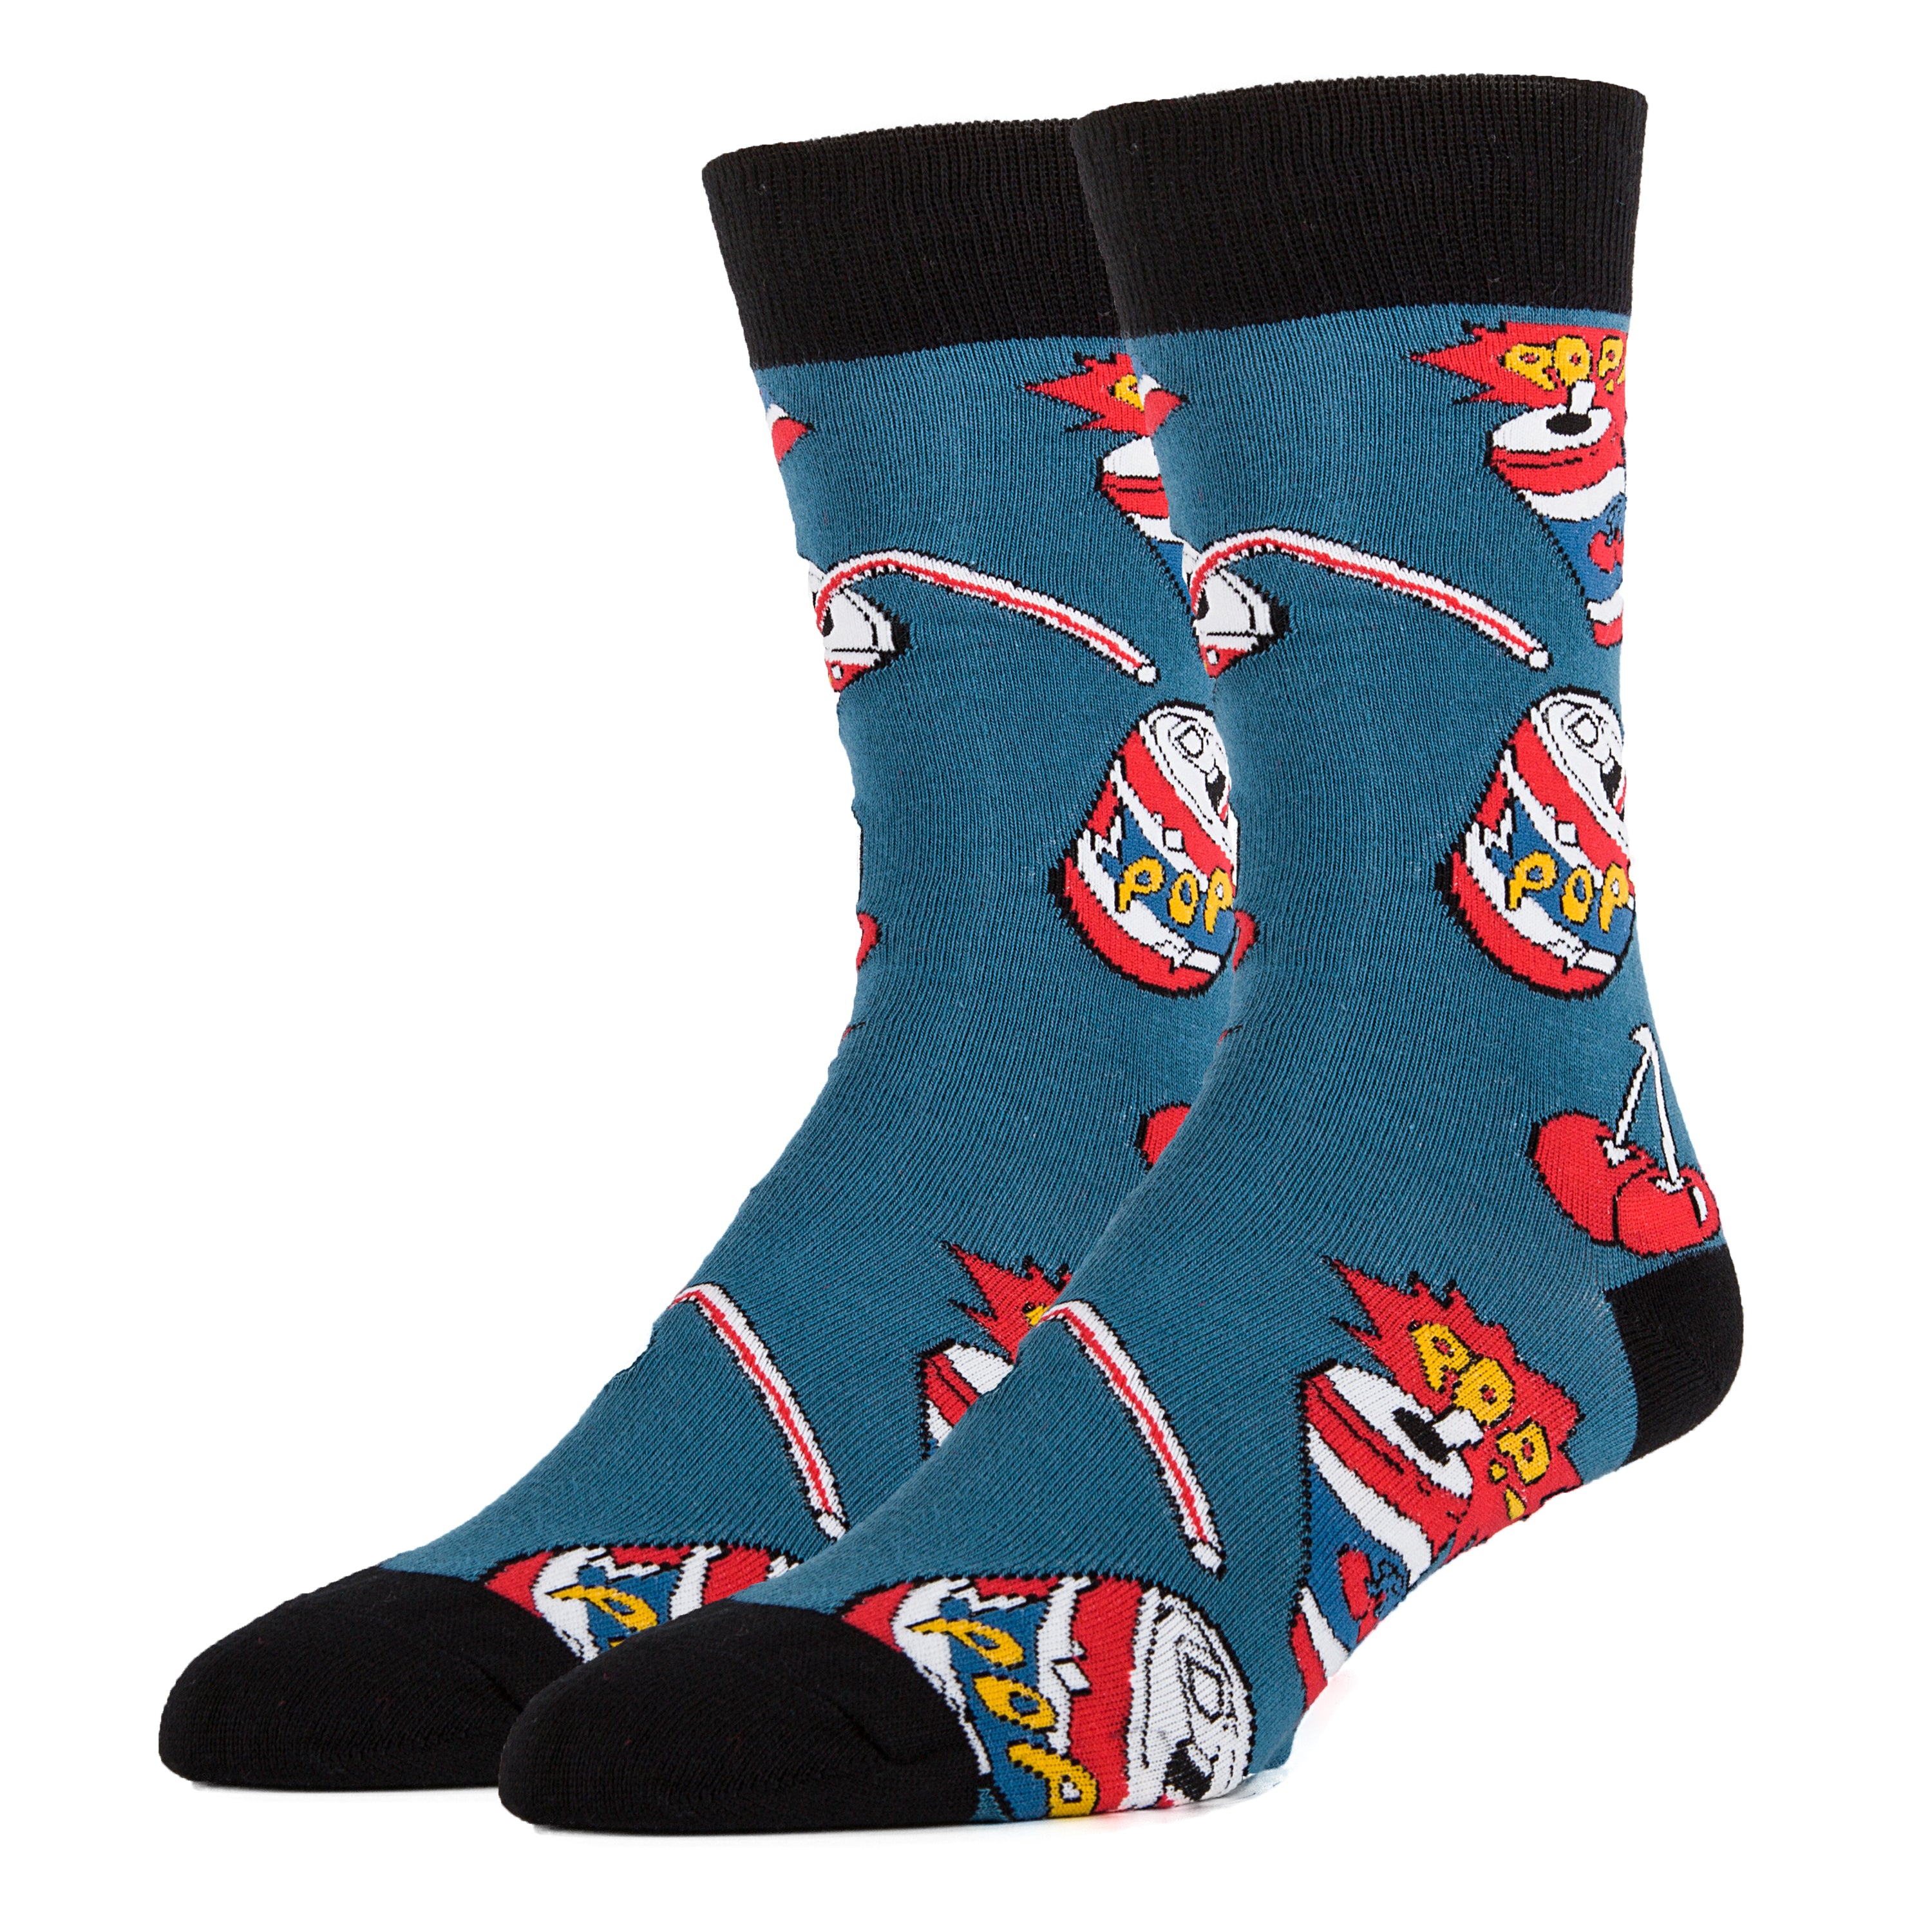 Cherry Pop Socks | Novelty Crew Socks For Men